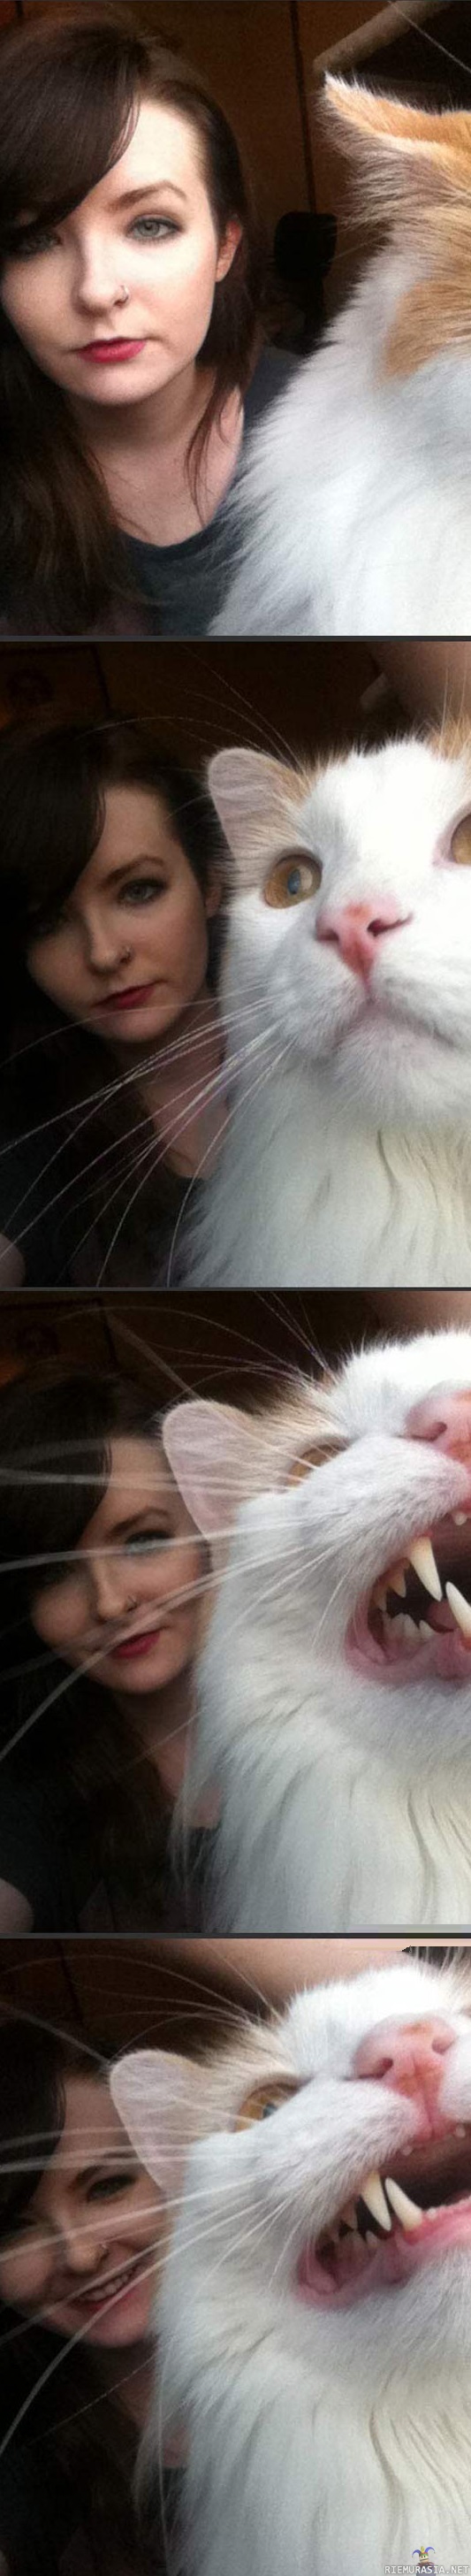 Kissa pilaa selfiehetken